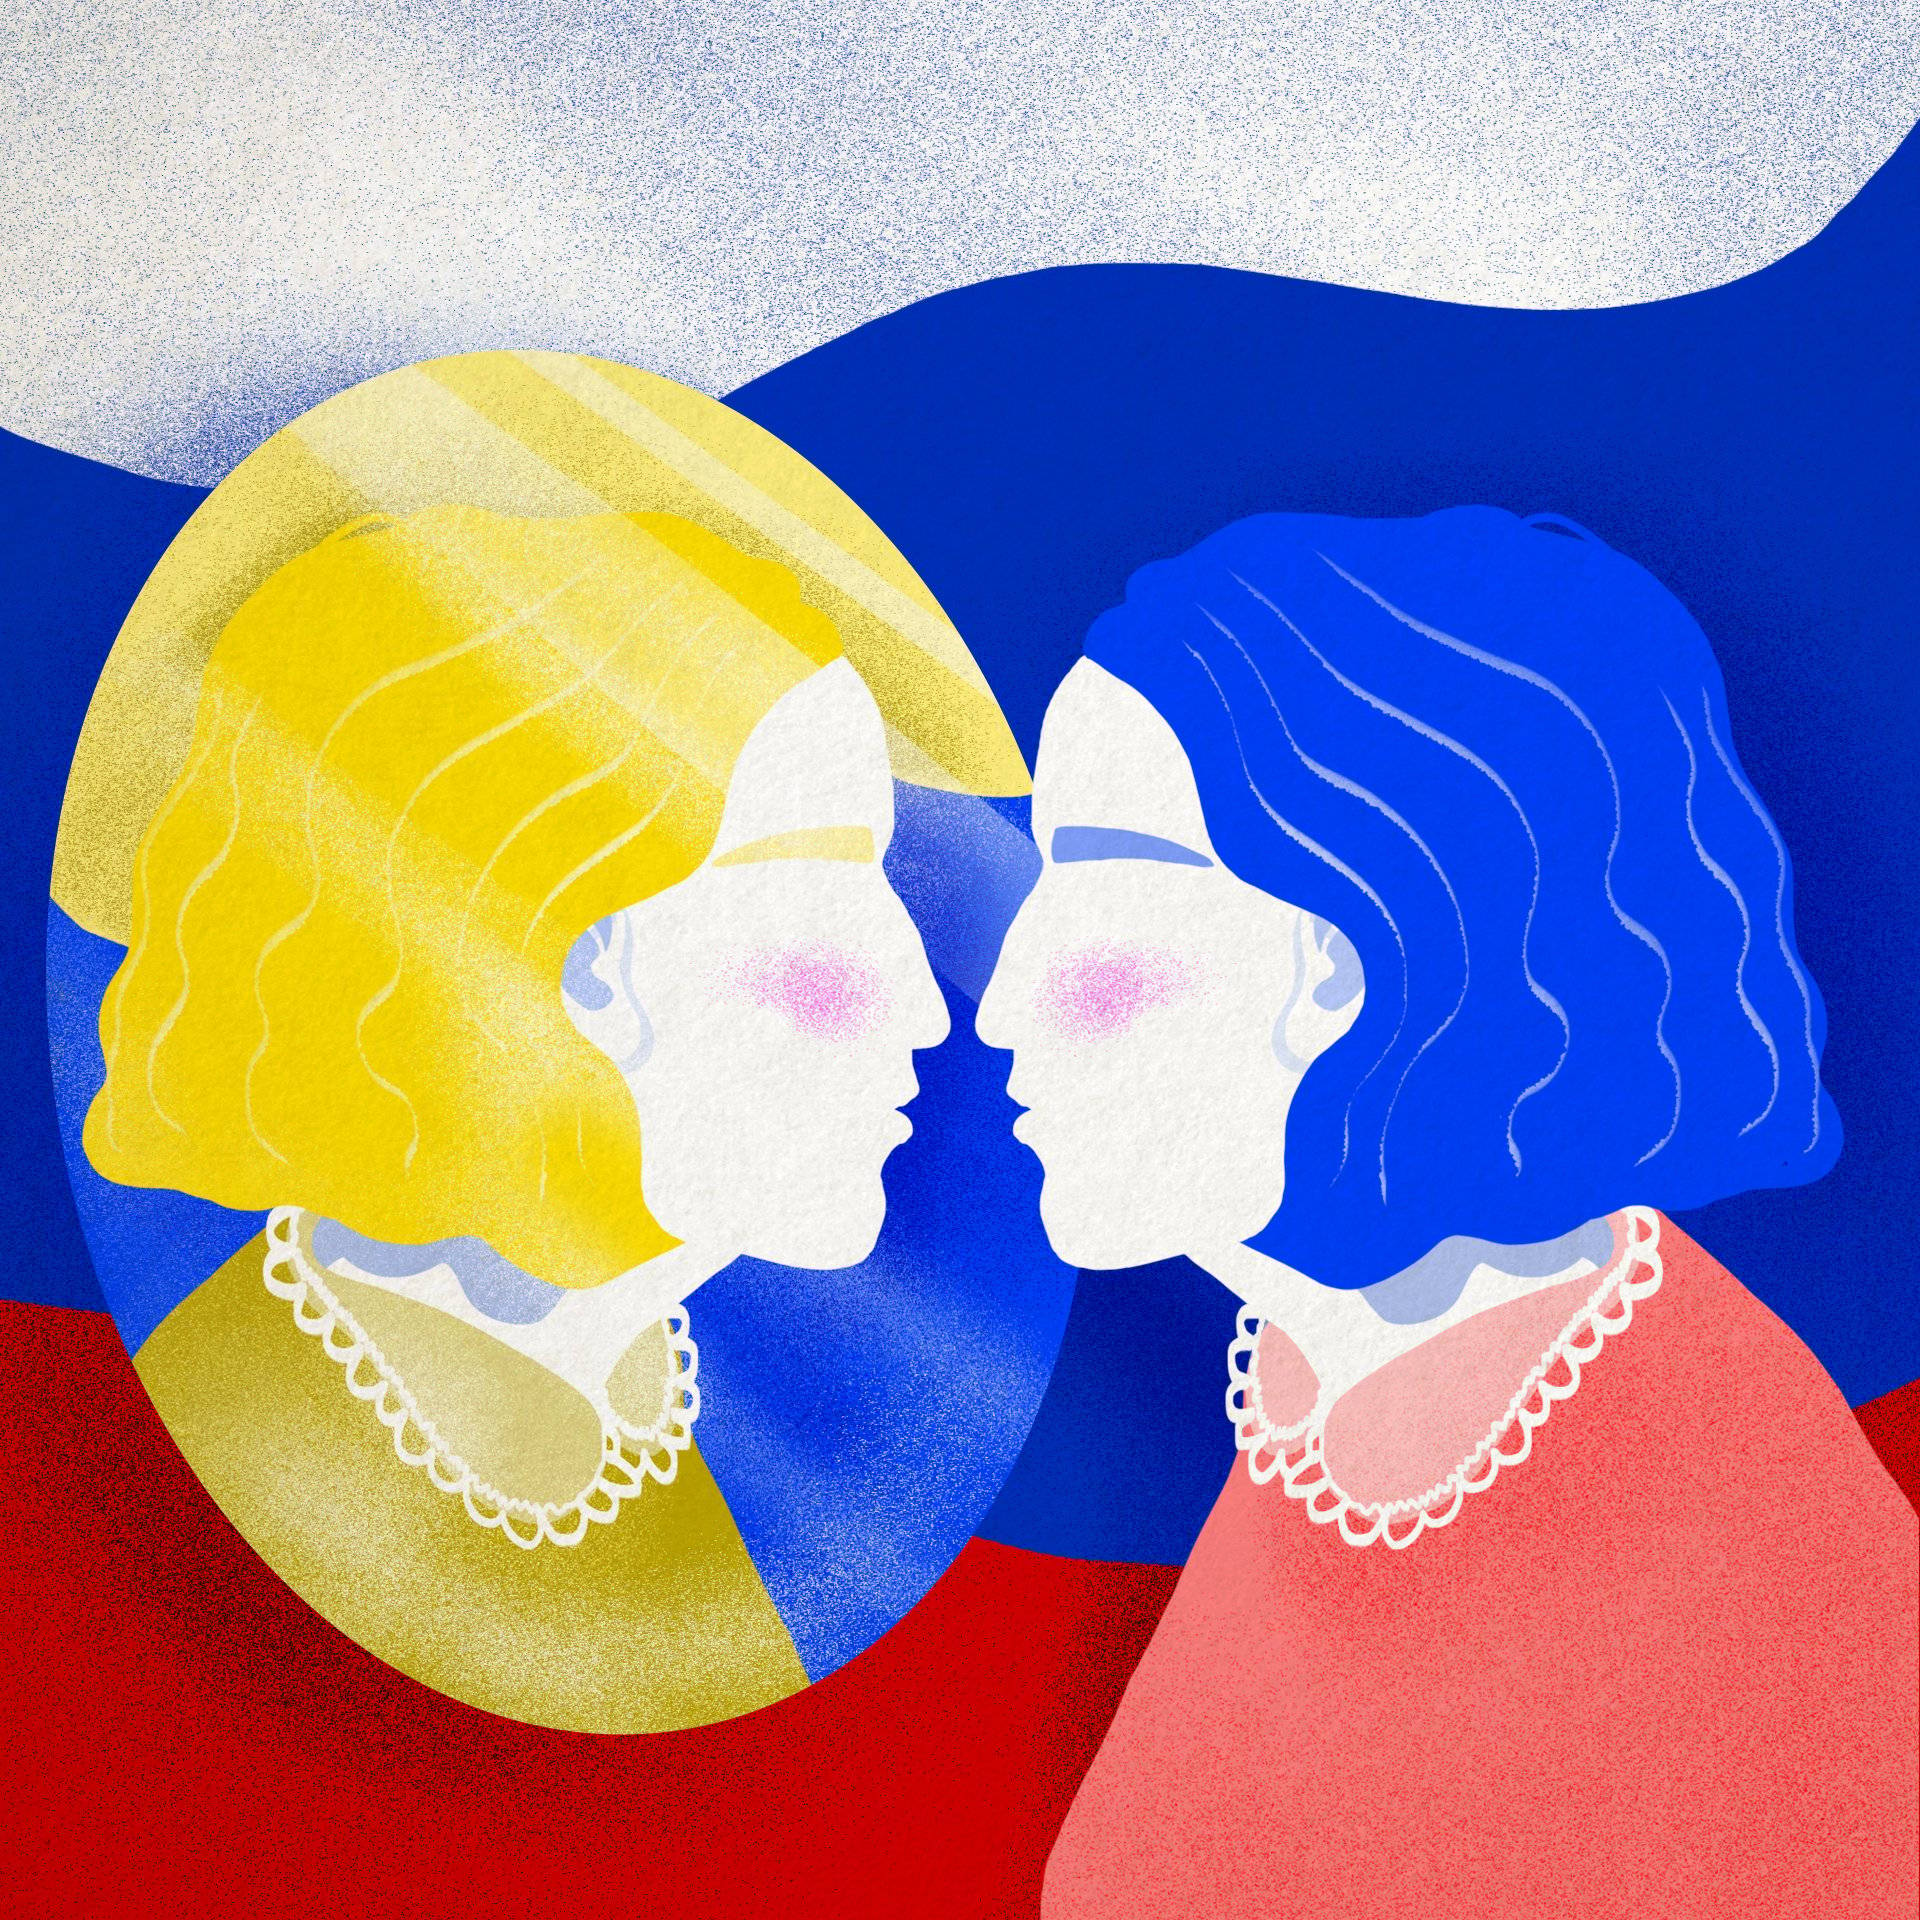 Ilustracja przedstawiająca konbietę o niebieskich włosach, która ogląda swoje odbicie w lustrze; w odbiciu kobieta ma włosy żółte. W tle widać kolory rosyjskiej flagi.